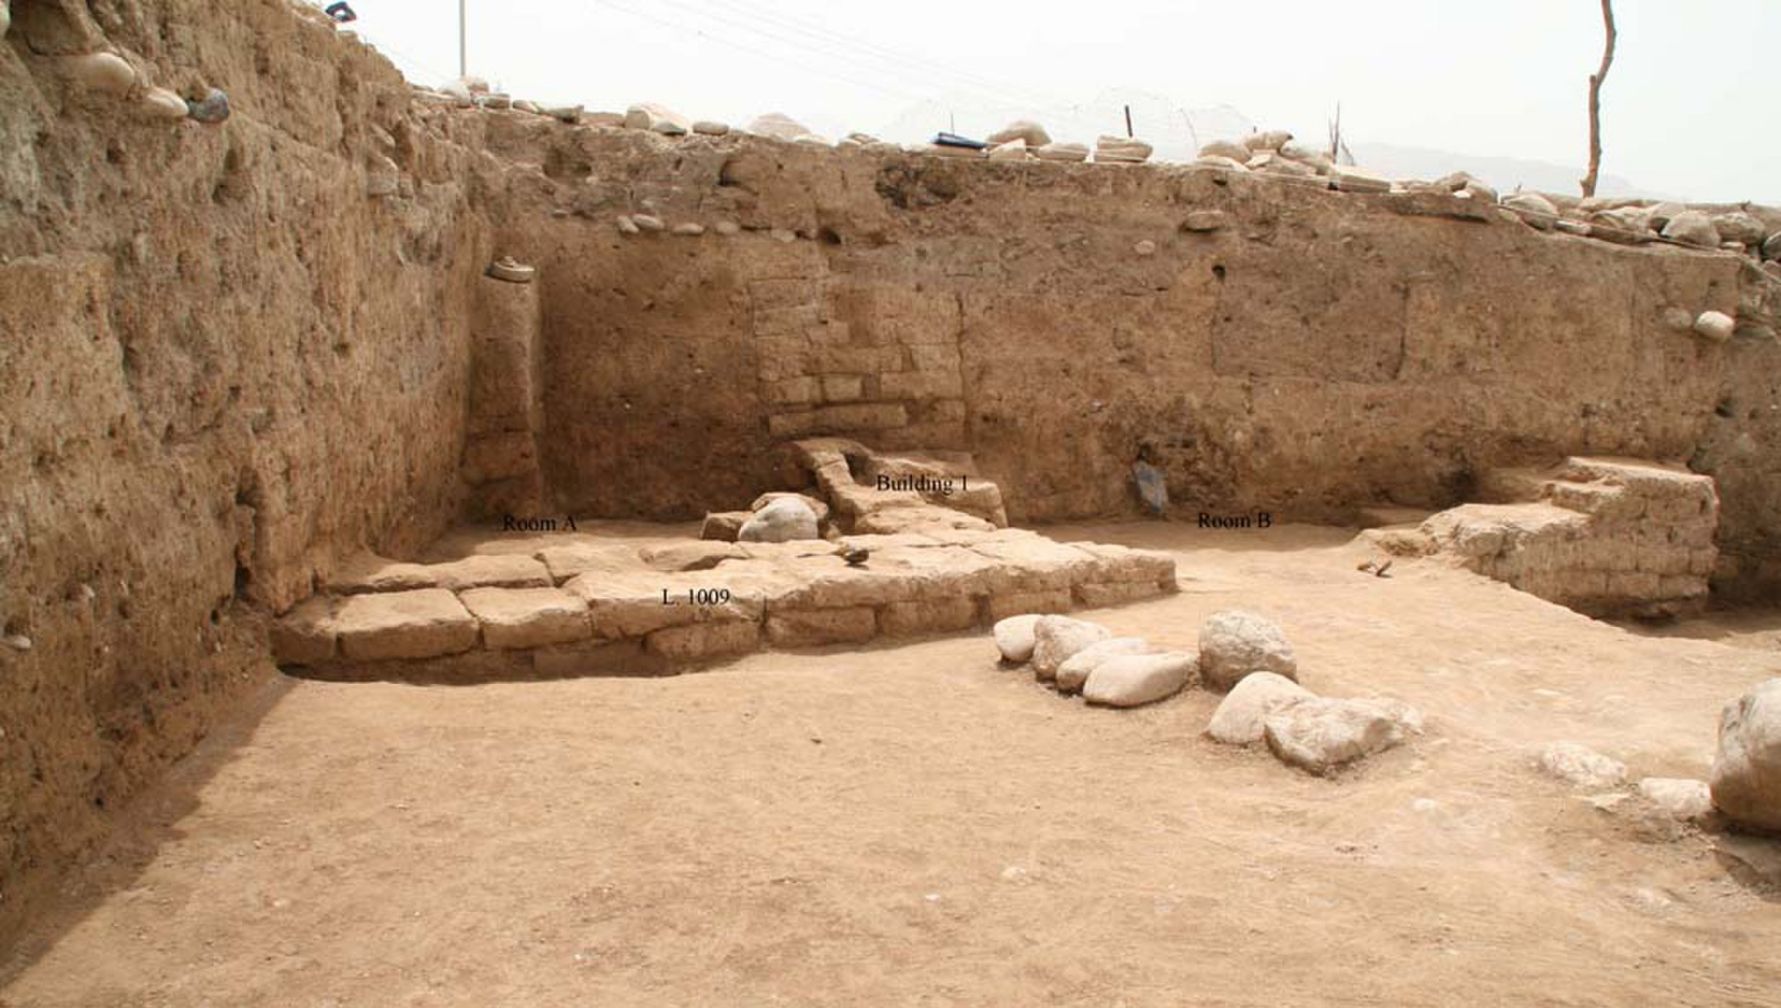 Gli archeologi nella regione del Kurdistan, nel nord dell'Iraq, hanno scoperto un'antica città chiamata "Idu". Il sito fu occupato fin dal Neolitico, quando l'agricoltura apparve per la prima volta in Medio Oriente, e la città raggiunse la sua massima estensione tra 3,300 e 2,900 anni fa. L'edificio qui mostrato è una struttura domestica, con almeno due stanze, che potrebbe risalire a un periodo relativamente tardo nella vita della città, forse circa 2,000 anni fa, quando l'impero dei Parti controllava l'area.